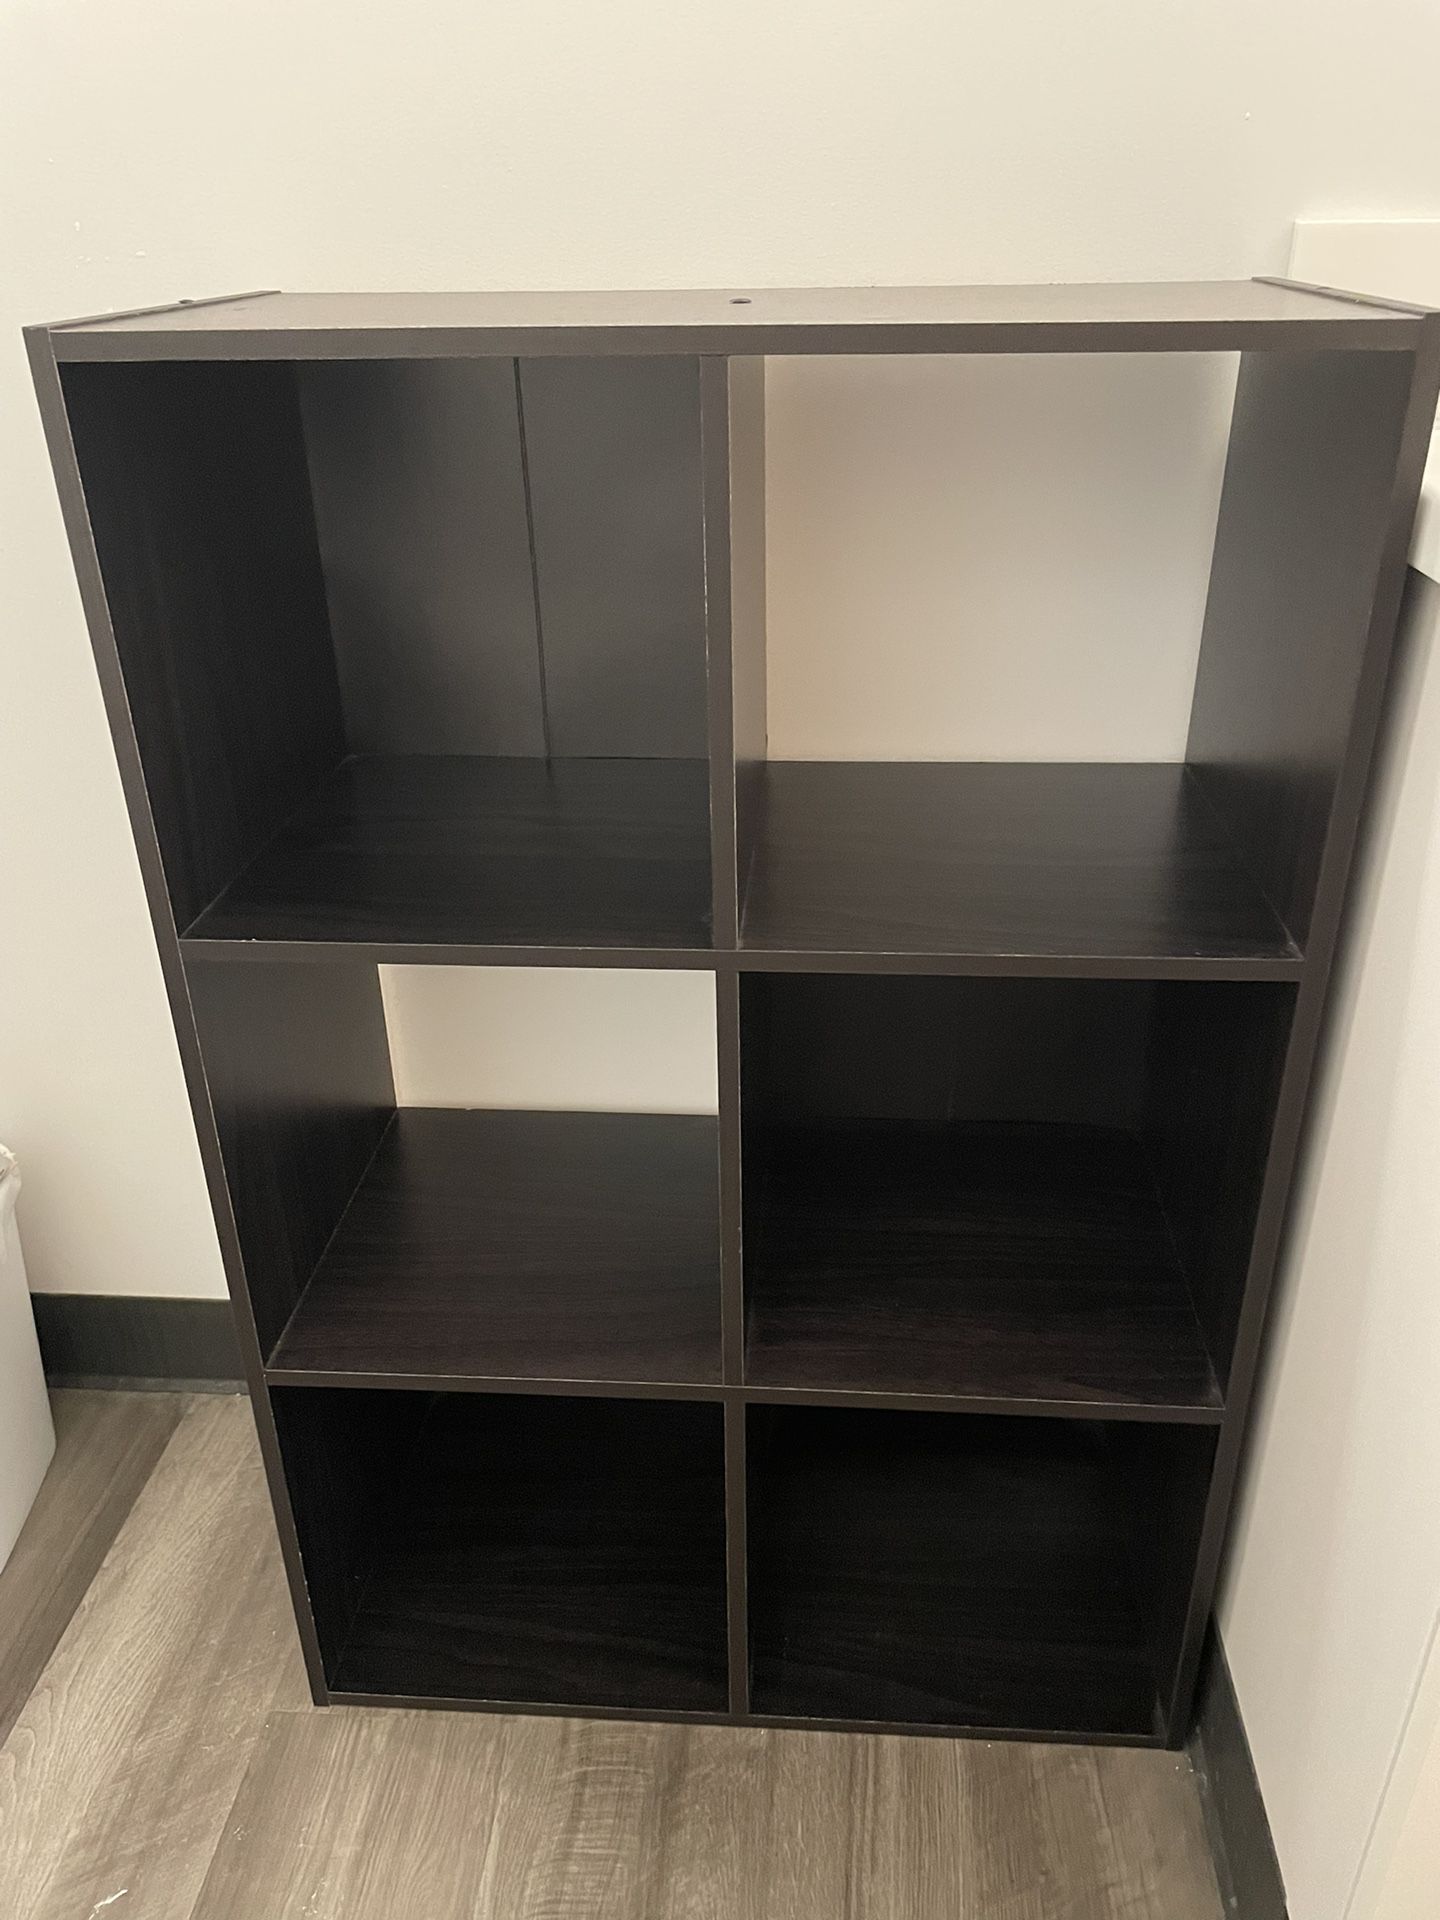 11" 6 Cube Organizer Shelf